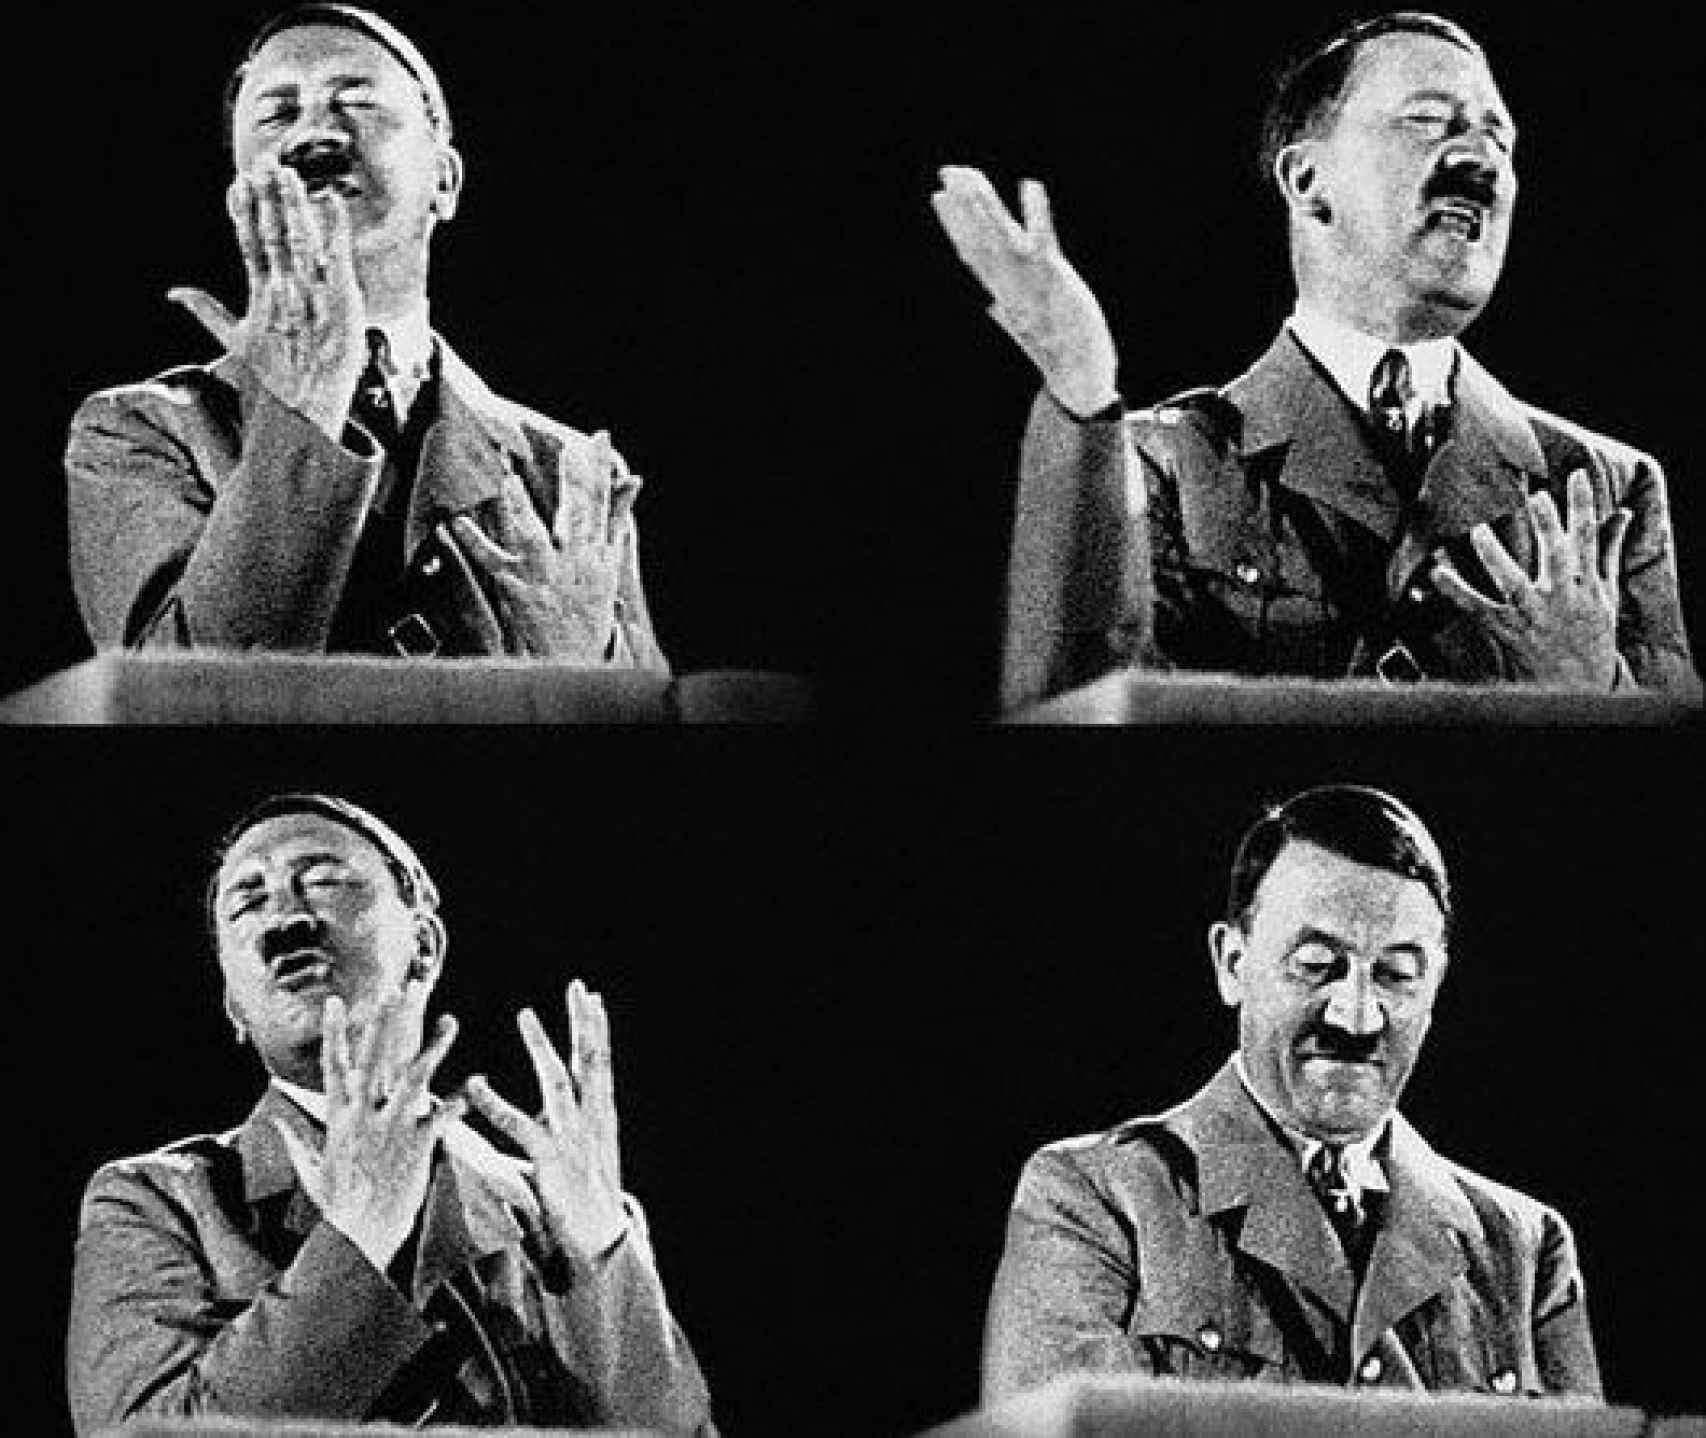 Hitler recurrió a su médico personal para disparar su estado anímico.